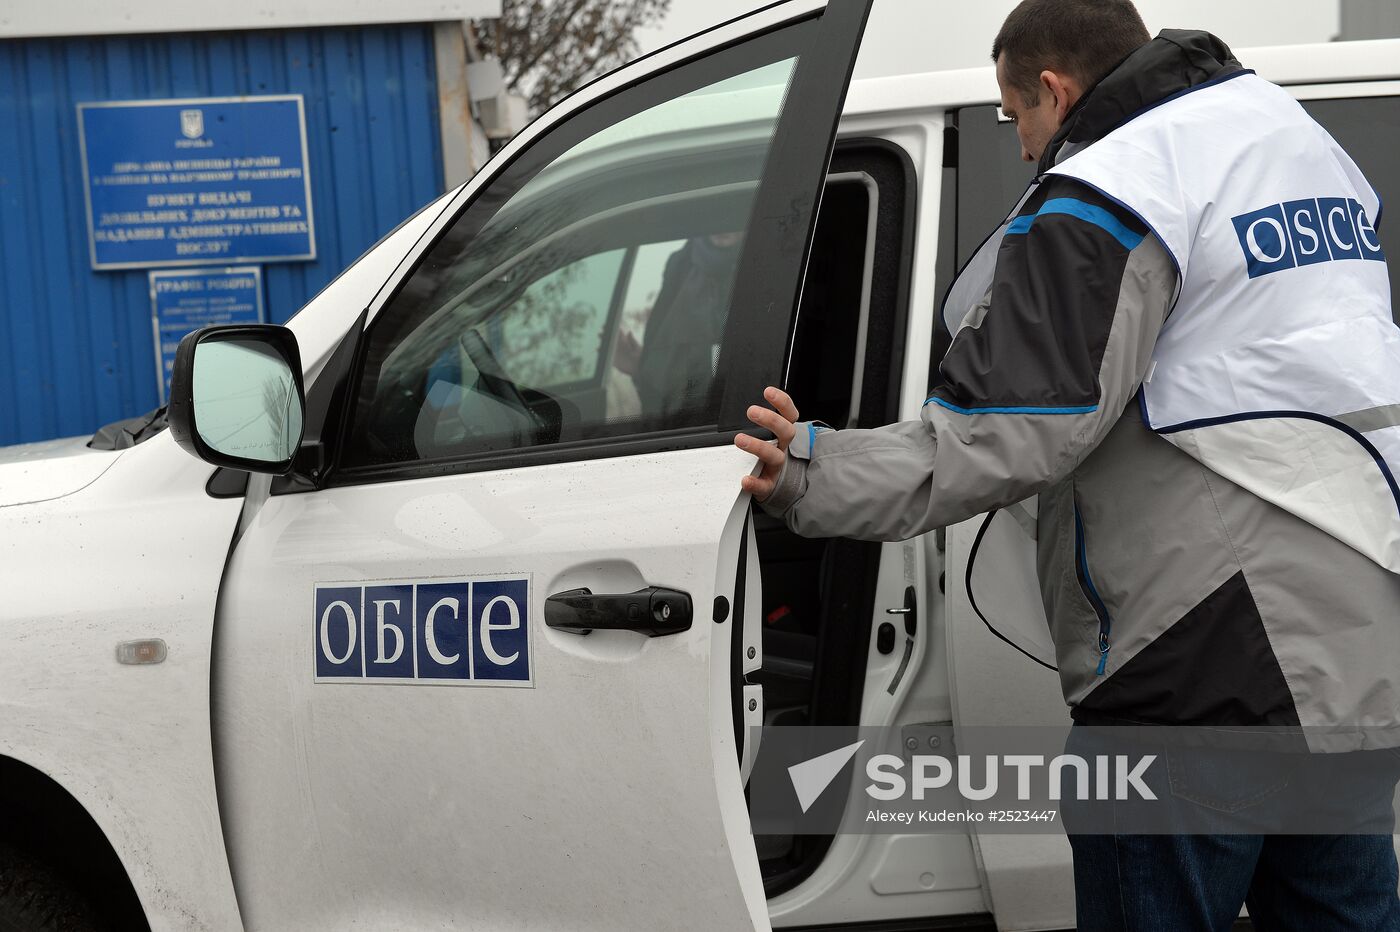 OSCE observers inspect Novoazovsk border crossing checkpoint